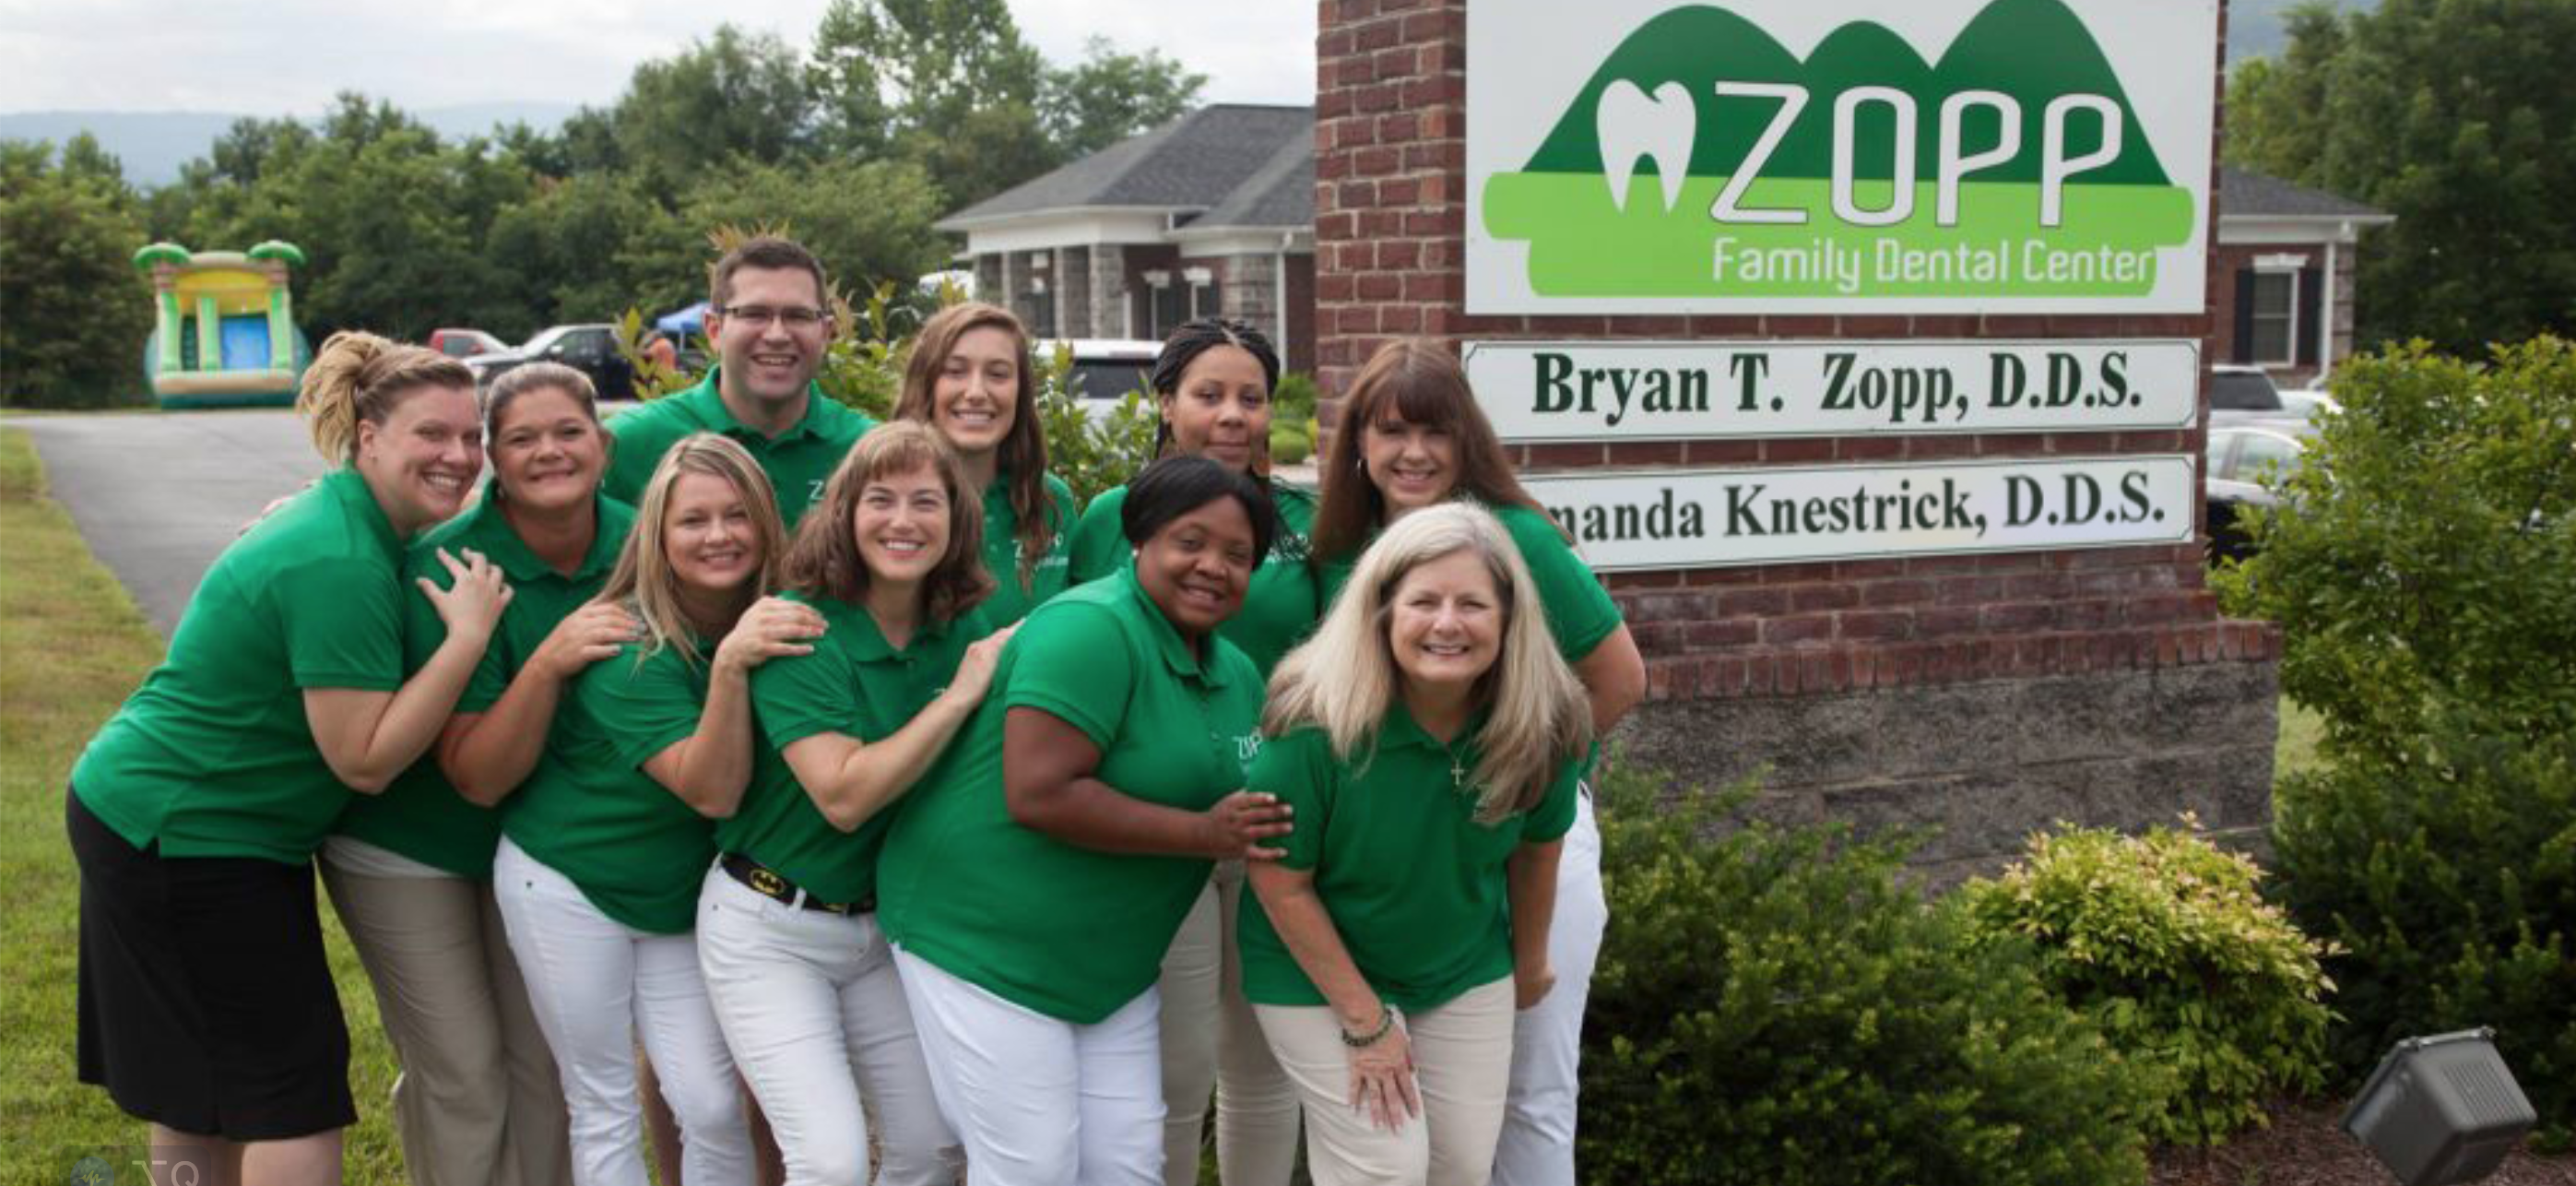 Zopp Family Dental Center group photo